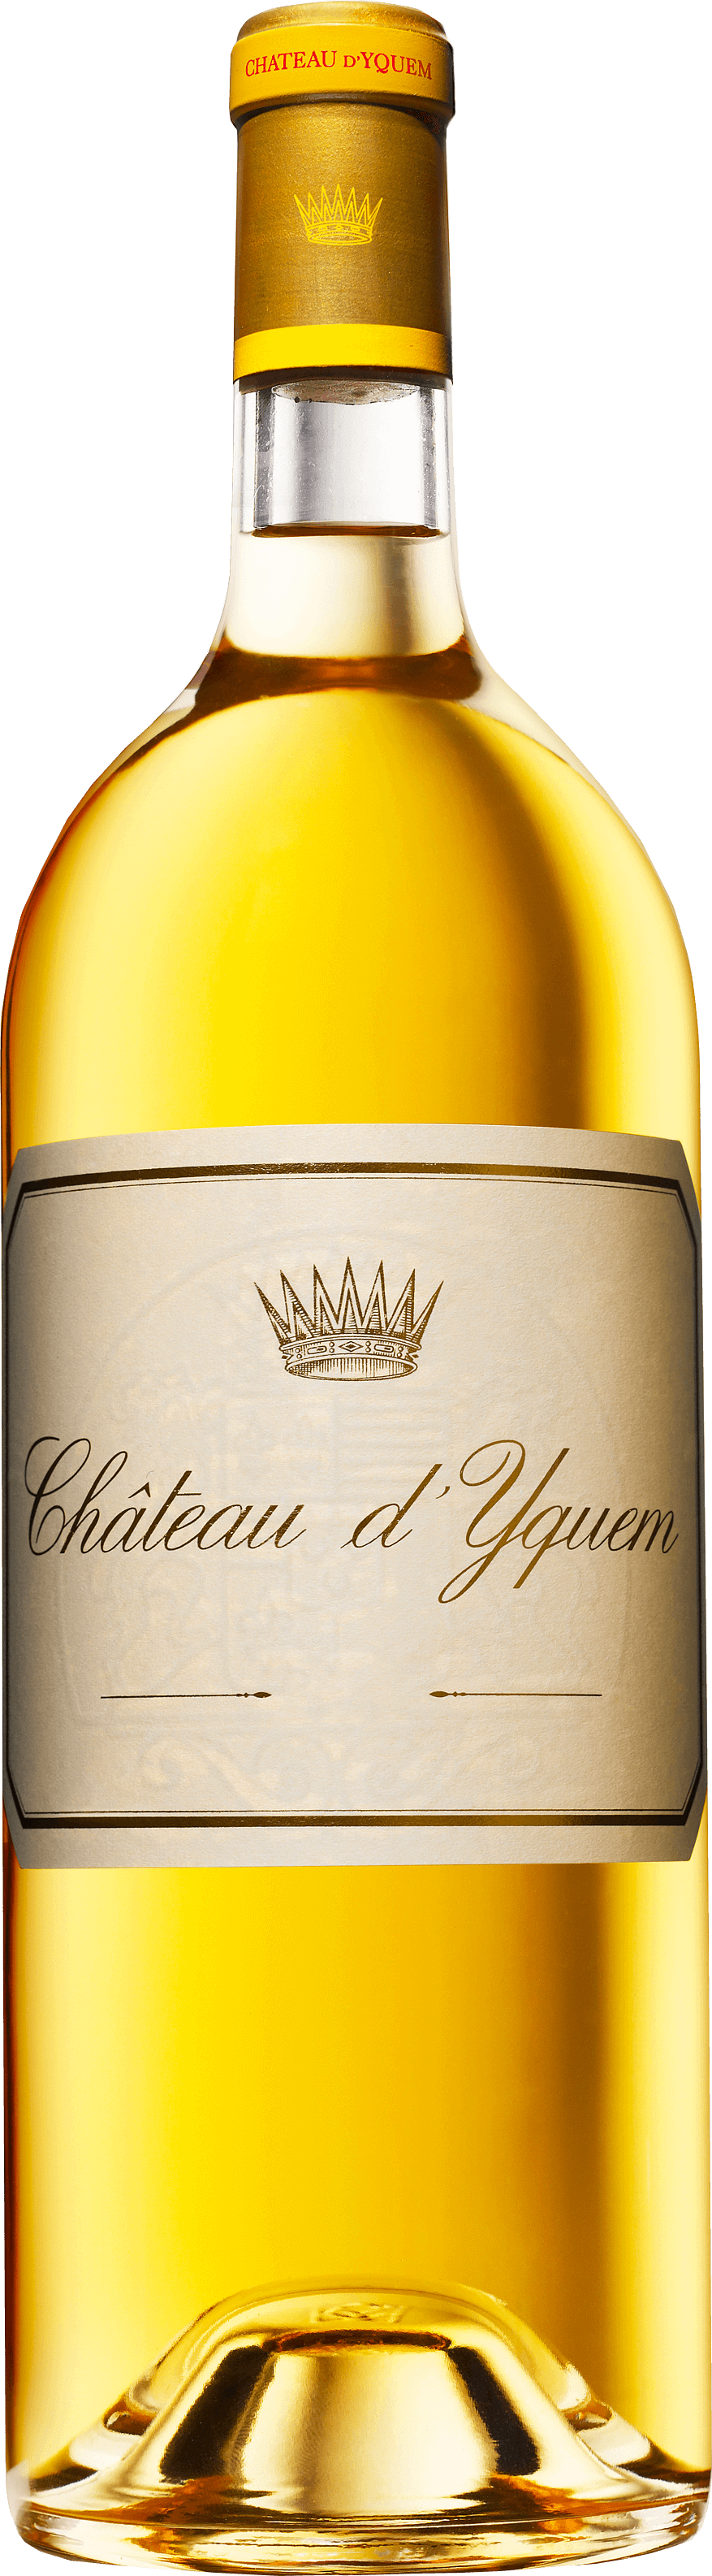 Yquem 1999 1er Cru Suprieur Sauternes, Bordeaux blanc